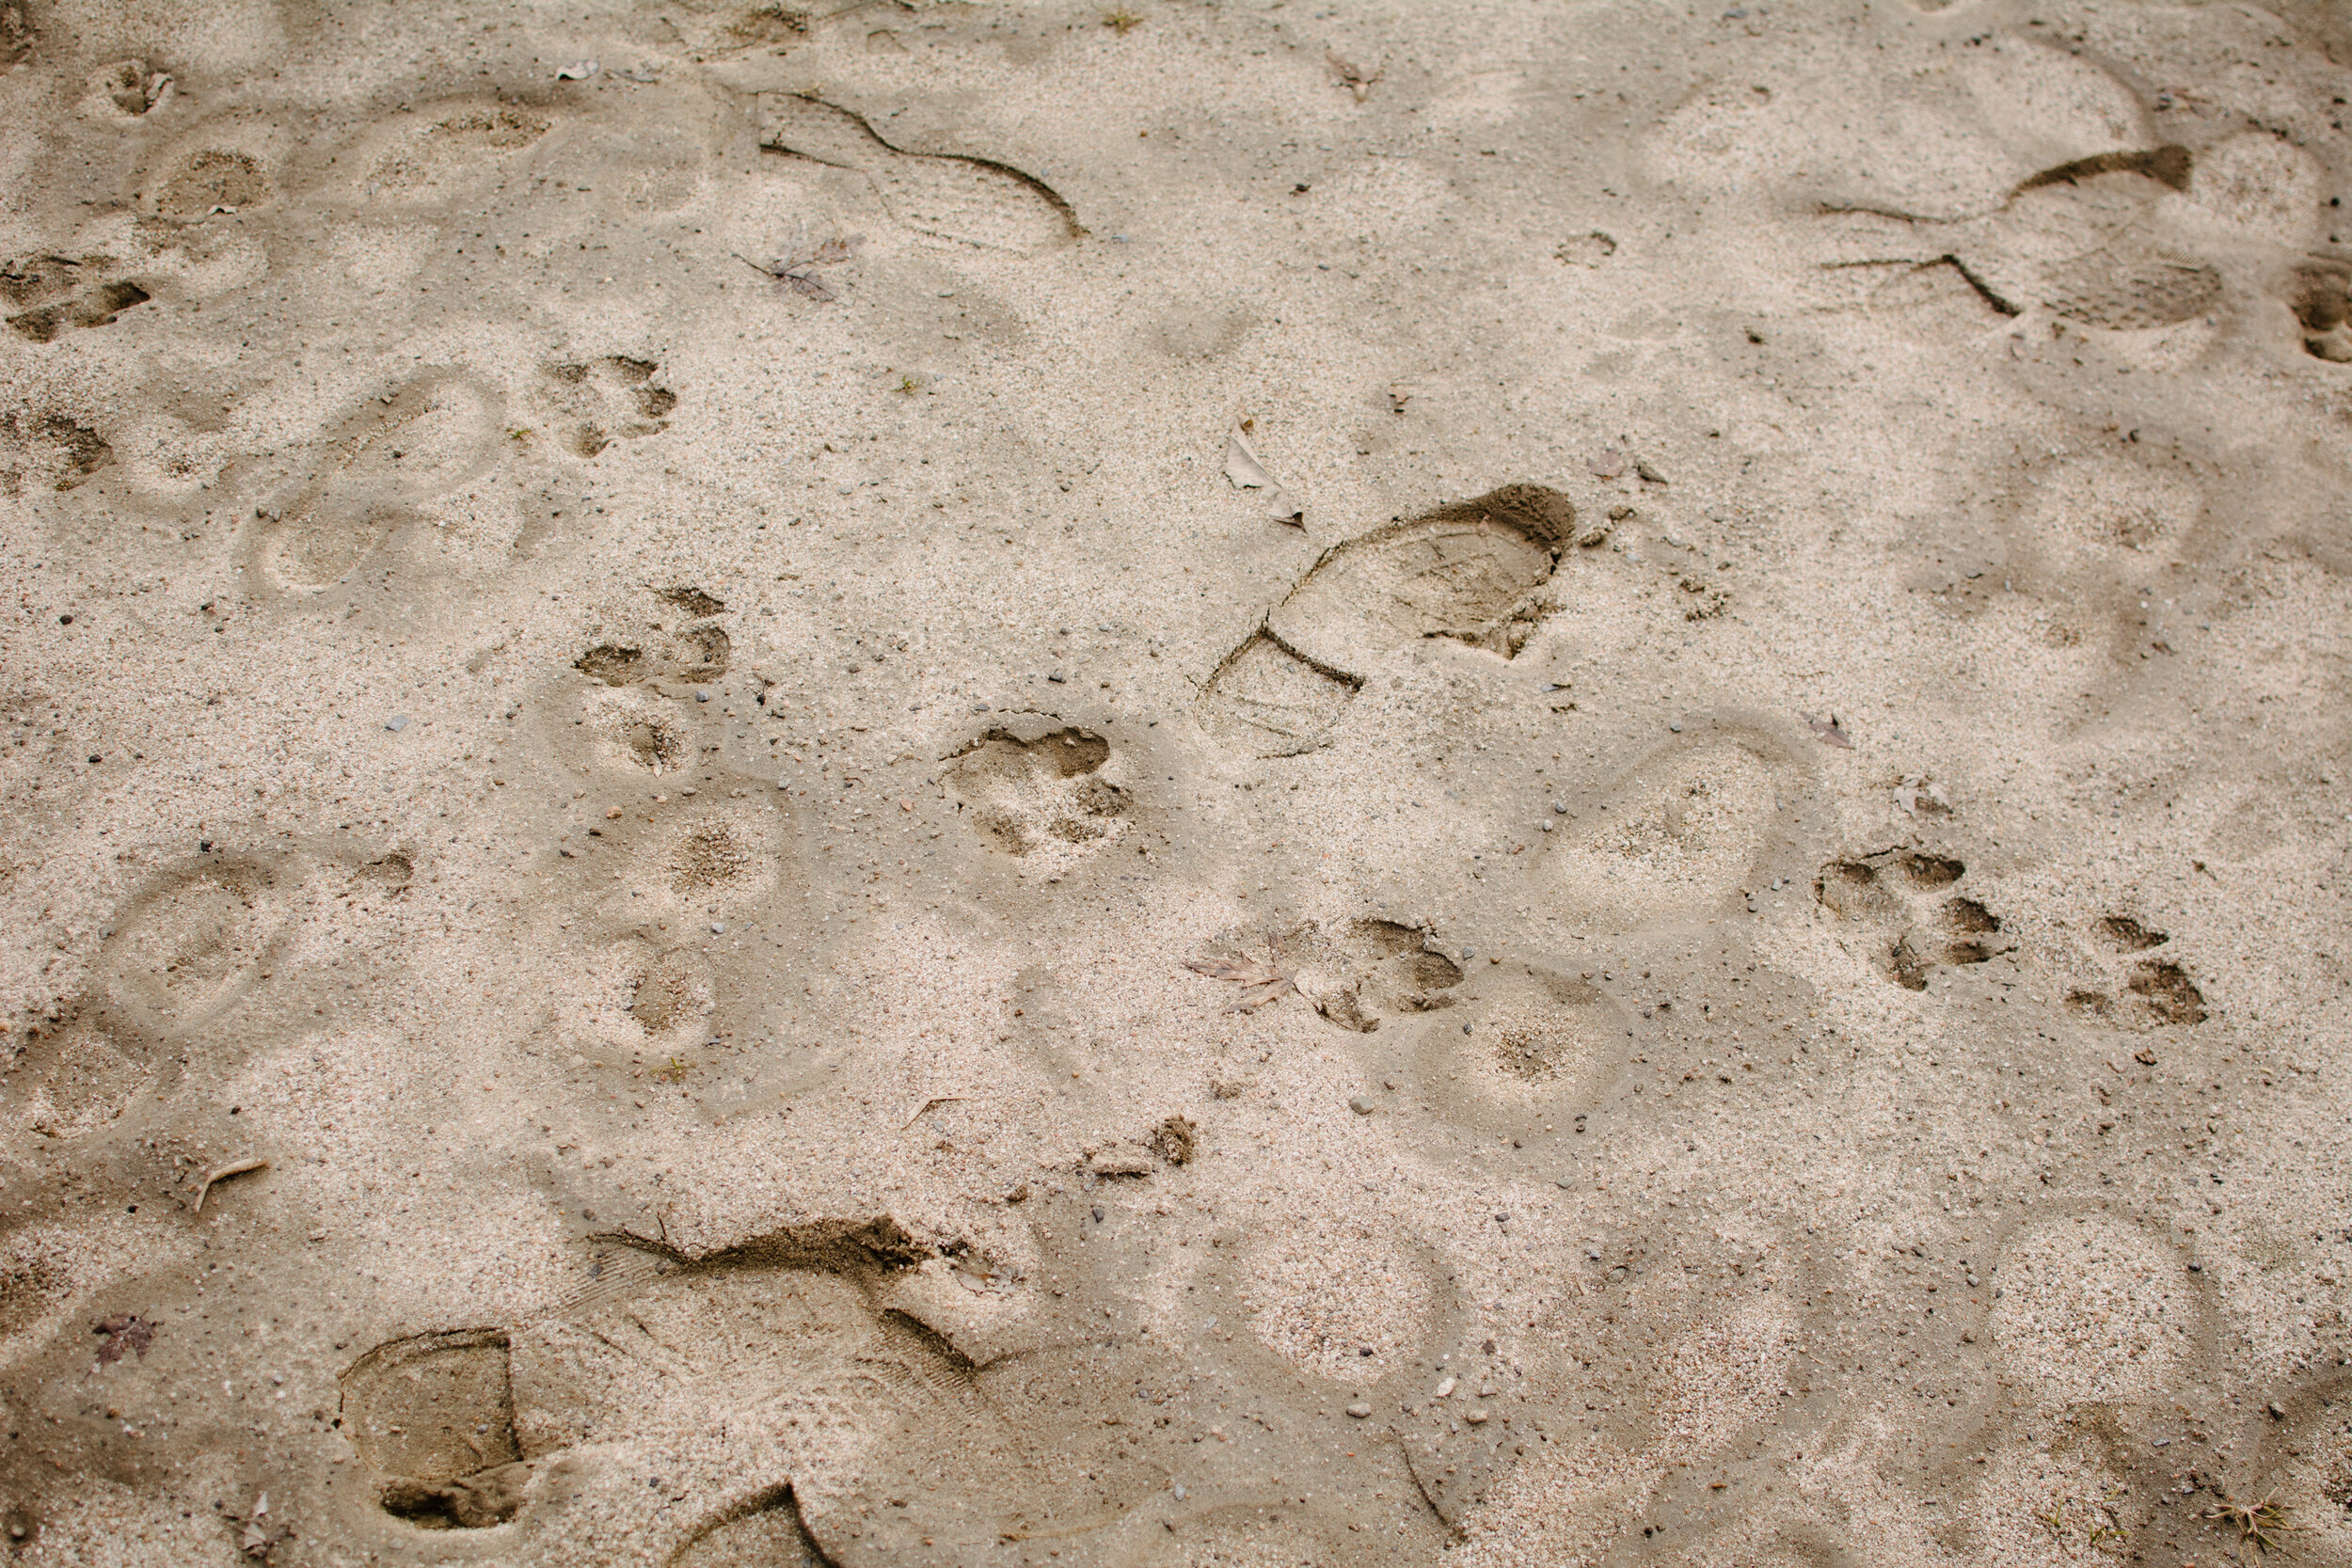 20200401_photo-traces-chien-pas-dans-sable-photographe-documentaire-a-montreal-009.jpg